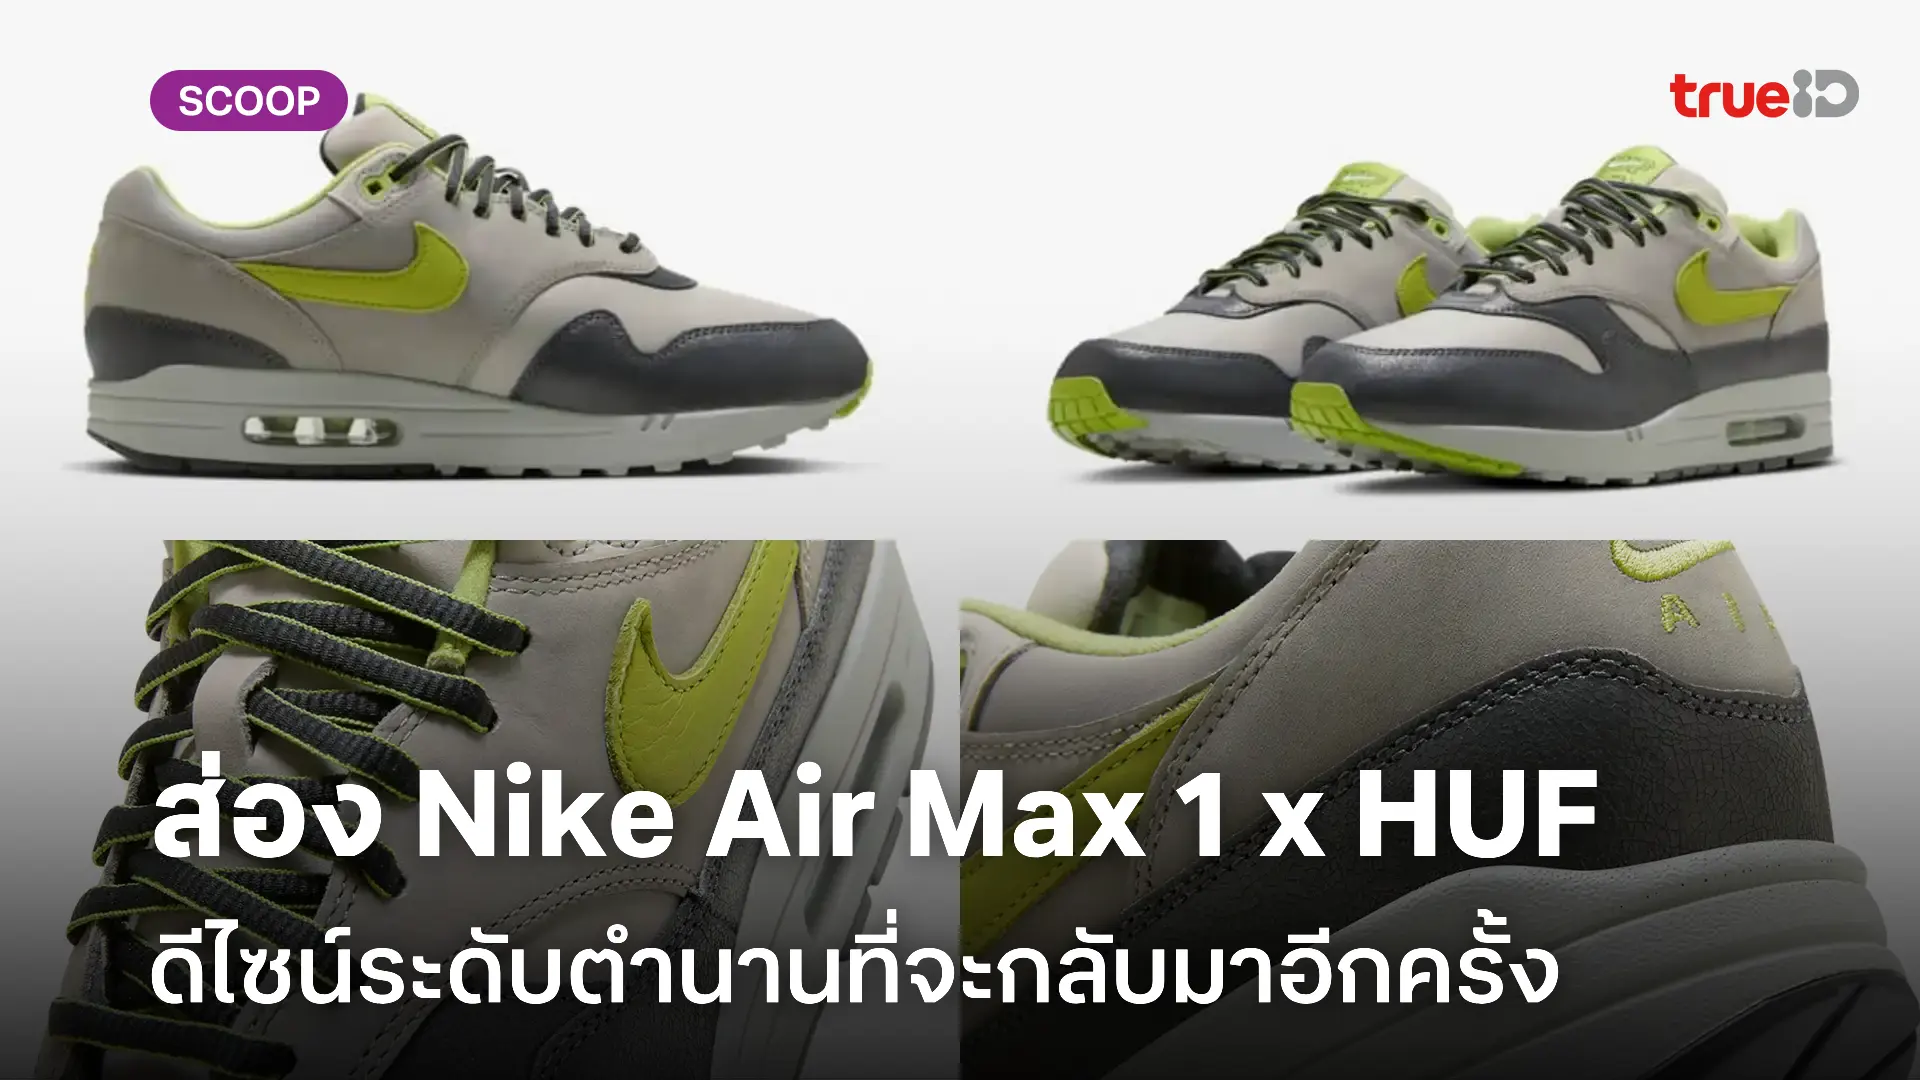 ชวนส่อง! Nike Air Max 1 x HUF ฉลองครบรอบ 20 ปีแห่งตำนาน